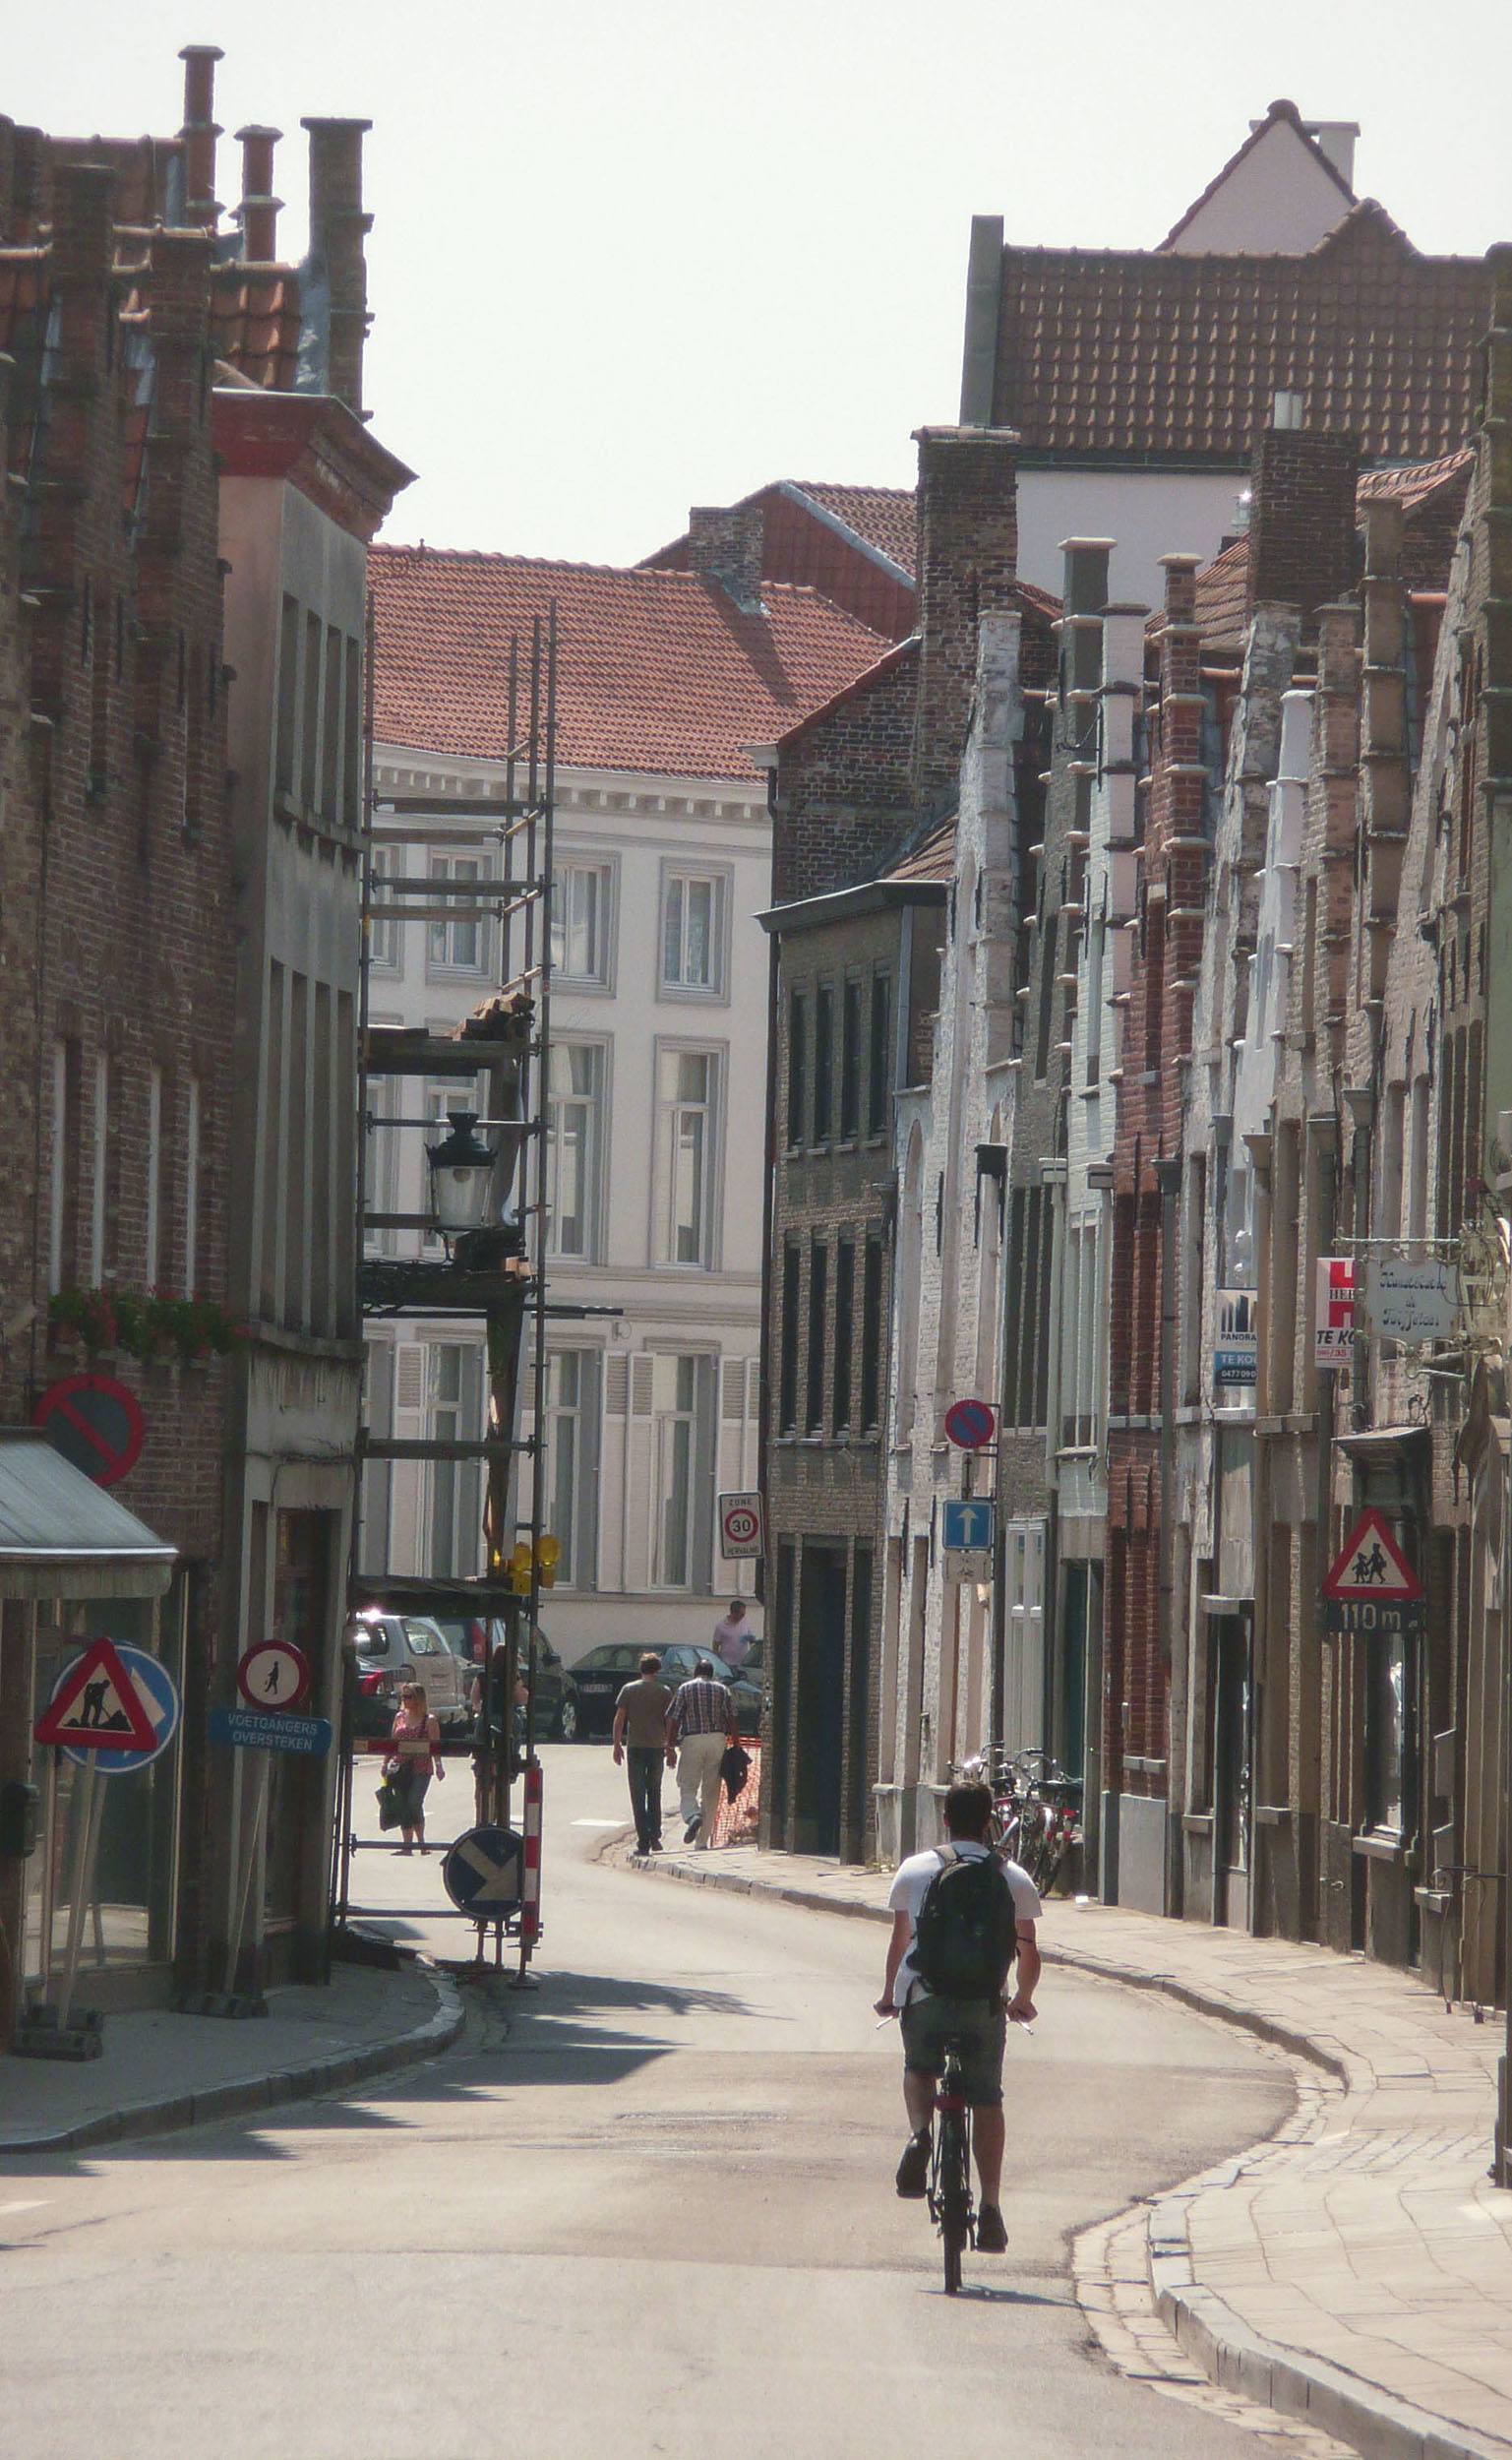 A cobblestone street in Bruges Belgium